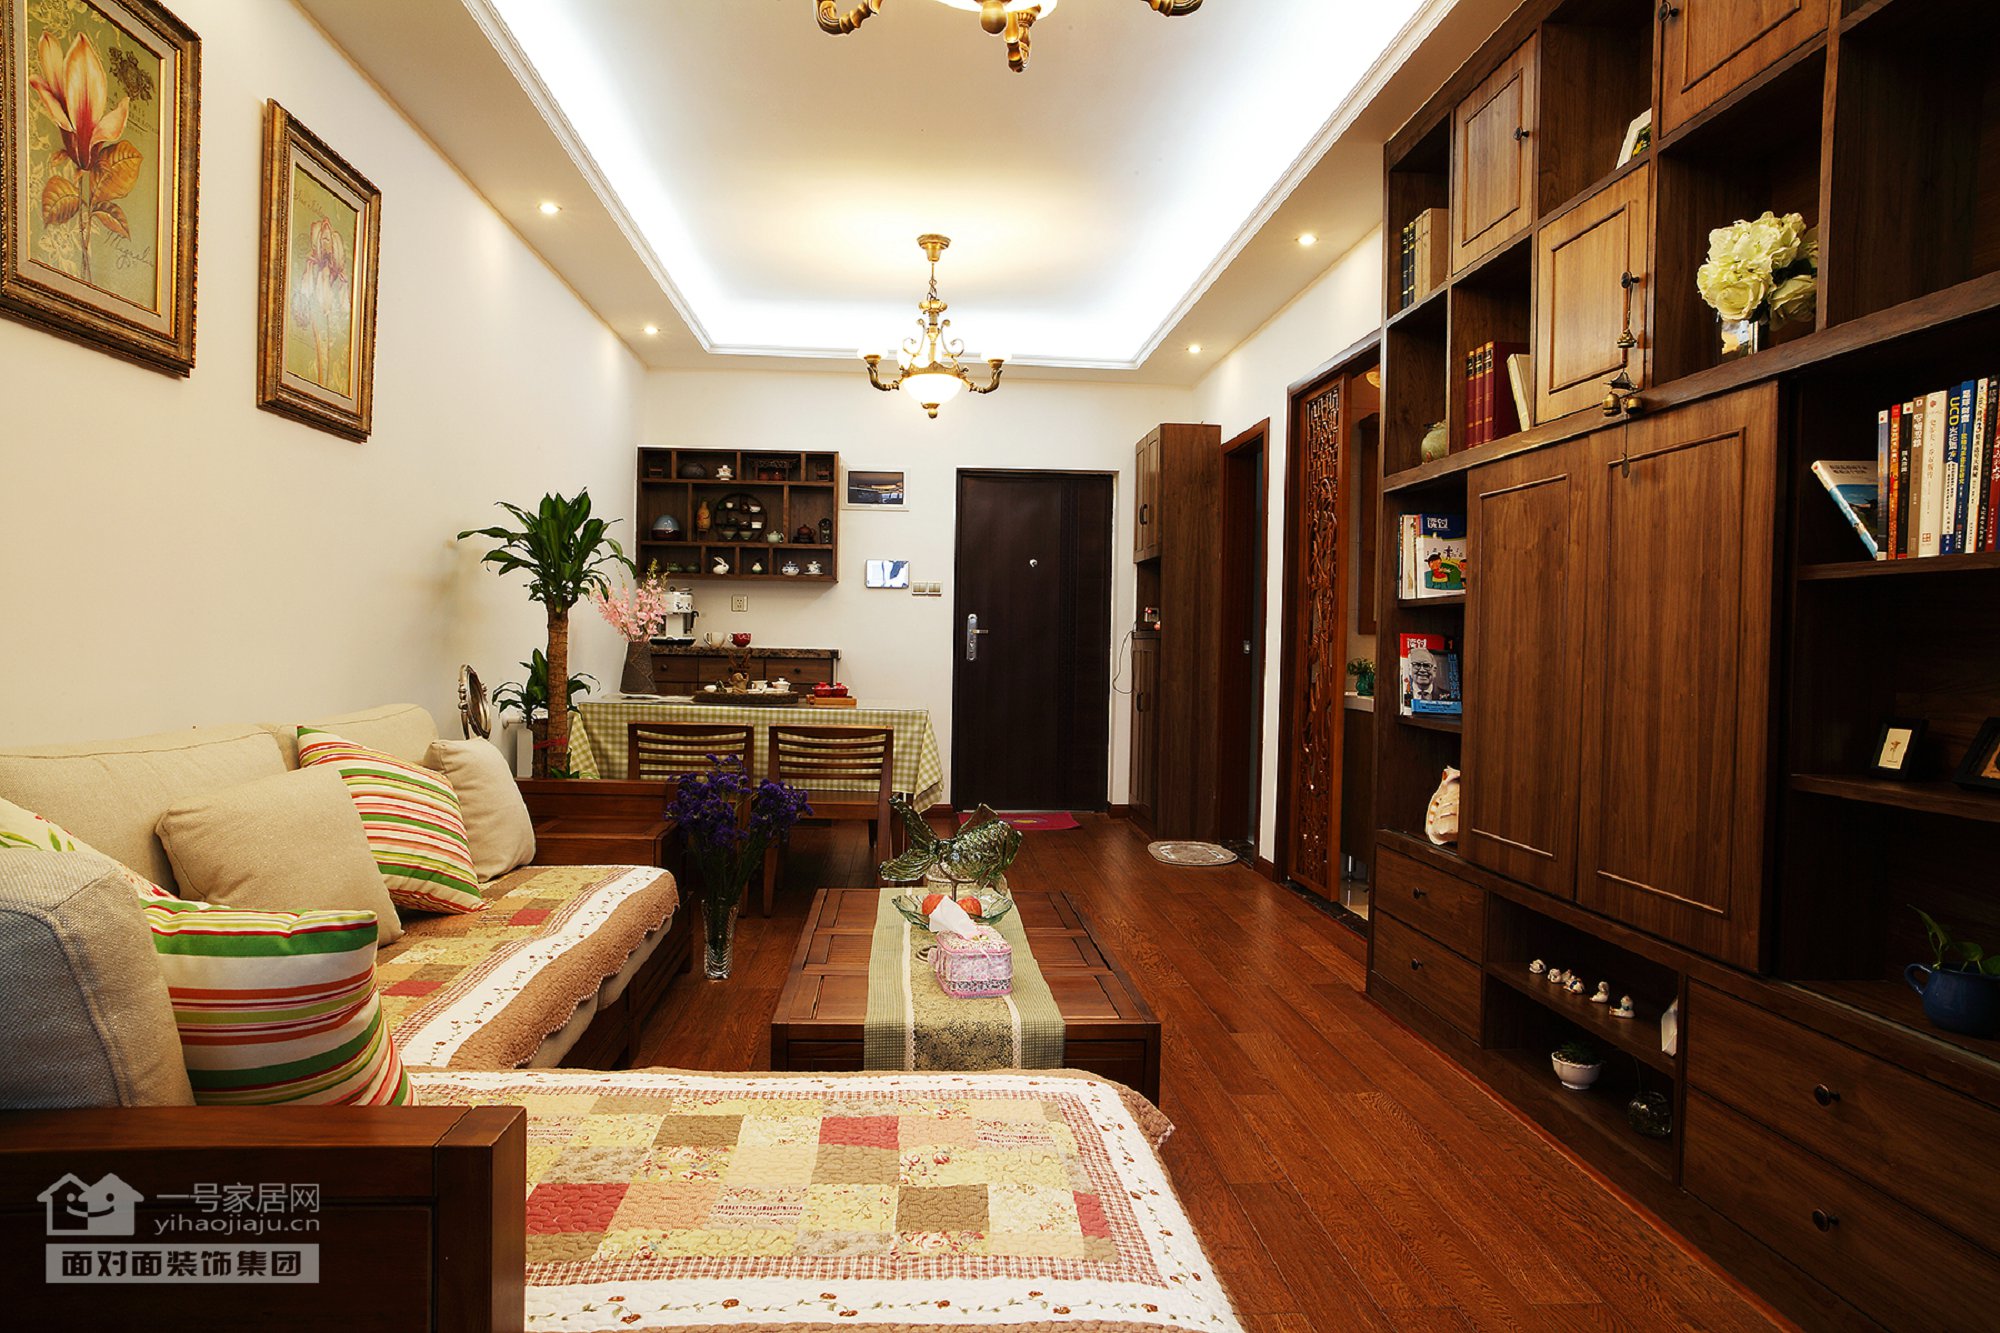 古朴雅致的木质家具,仿花梨木和紫檀色的主色调